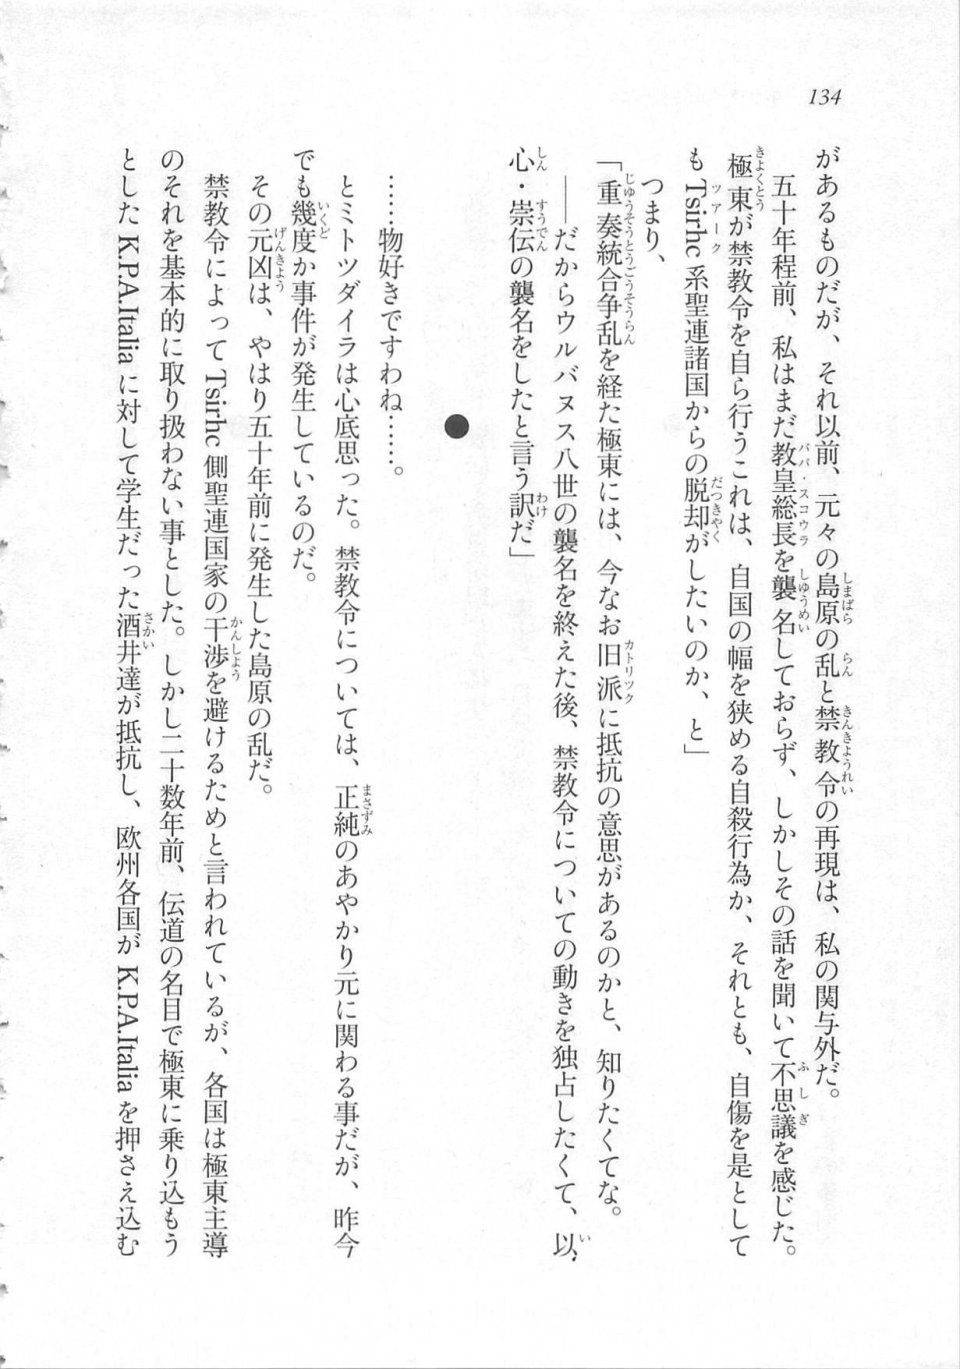 Kyoukai Senjou no Horizon LN Sidestory Vol 3 - Photo #138